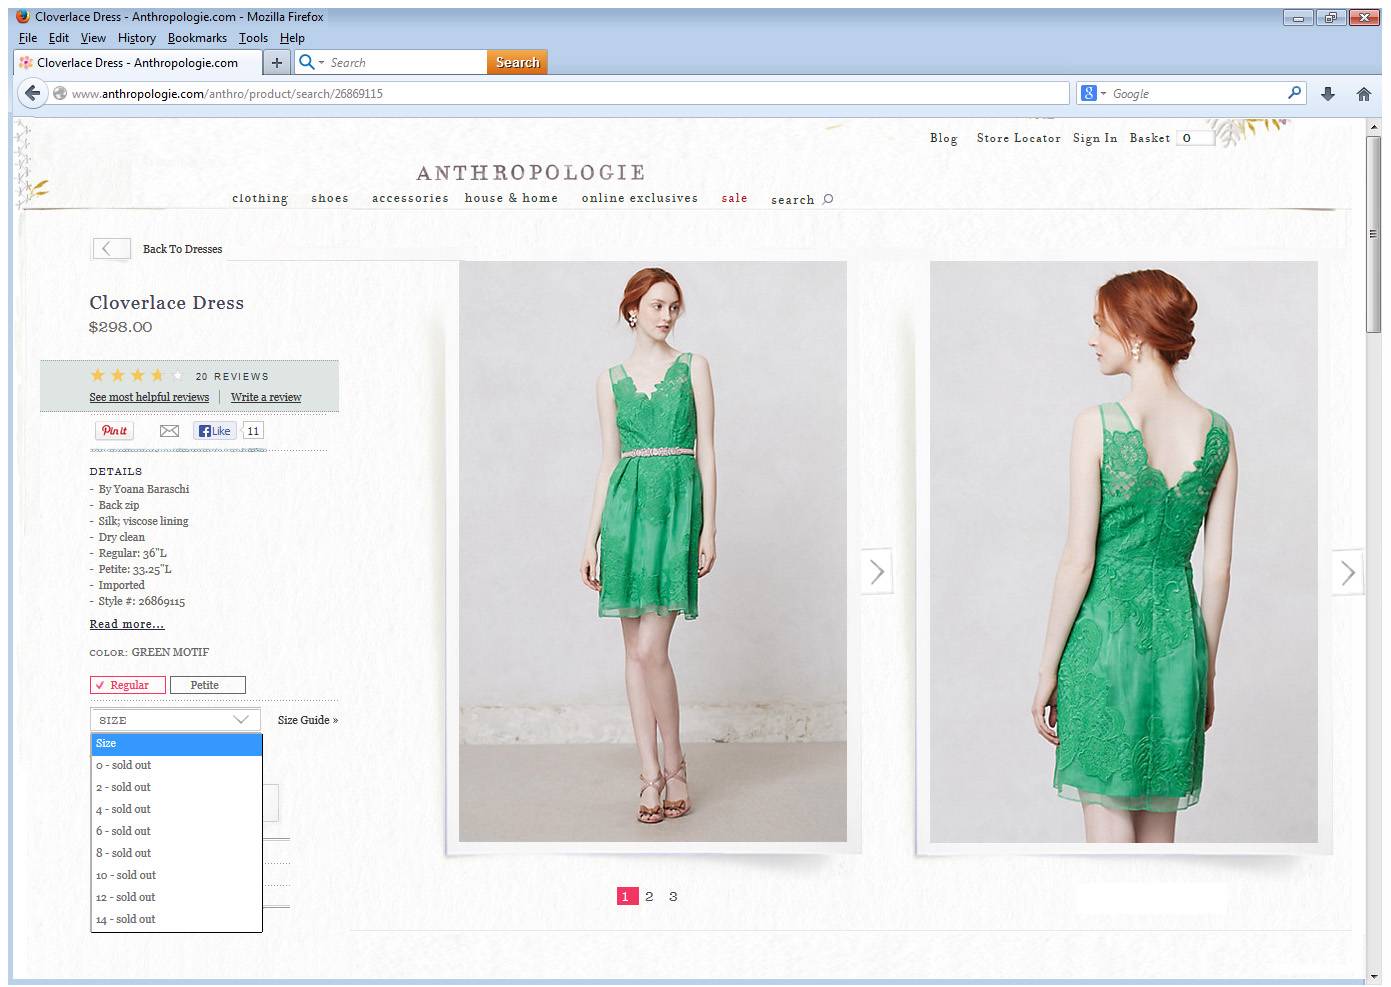 YOANA BARASCHI • Green CLOVERLACE Silk Organza Dress ANTHROPOLOGIE • NWT | eBay1391 x 987